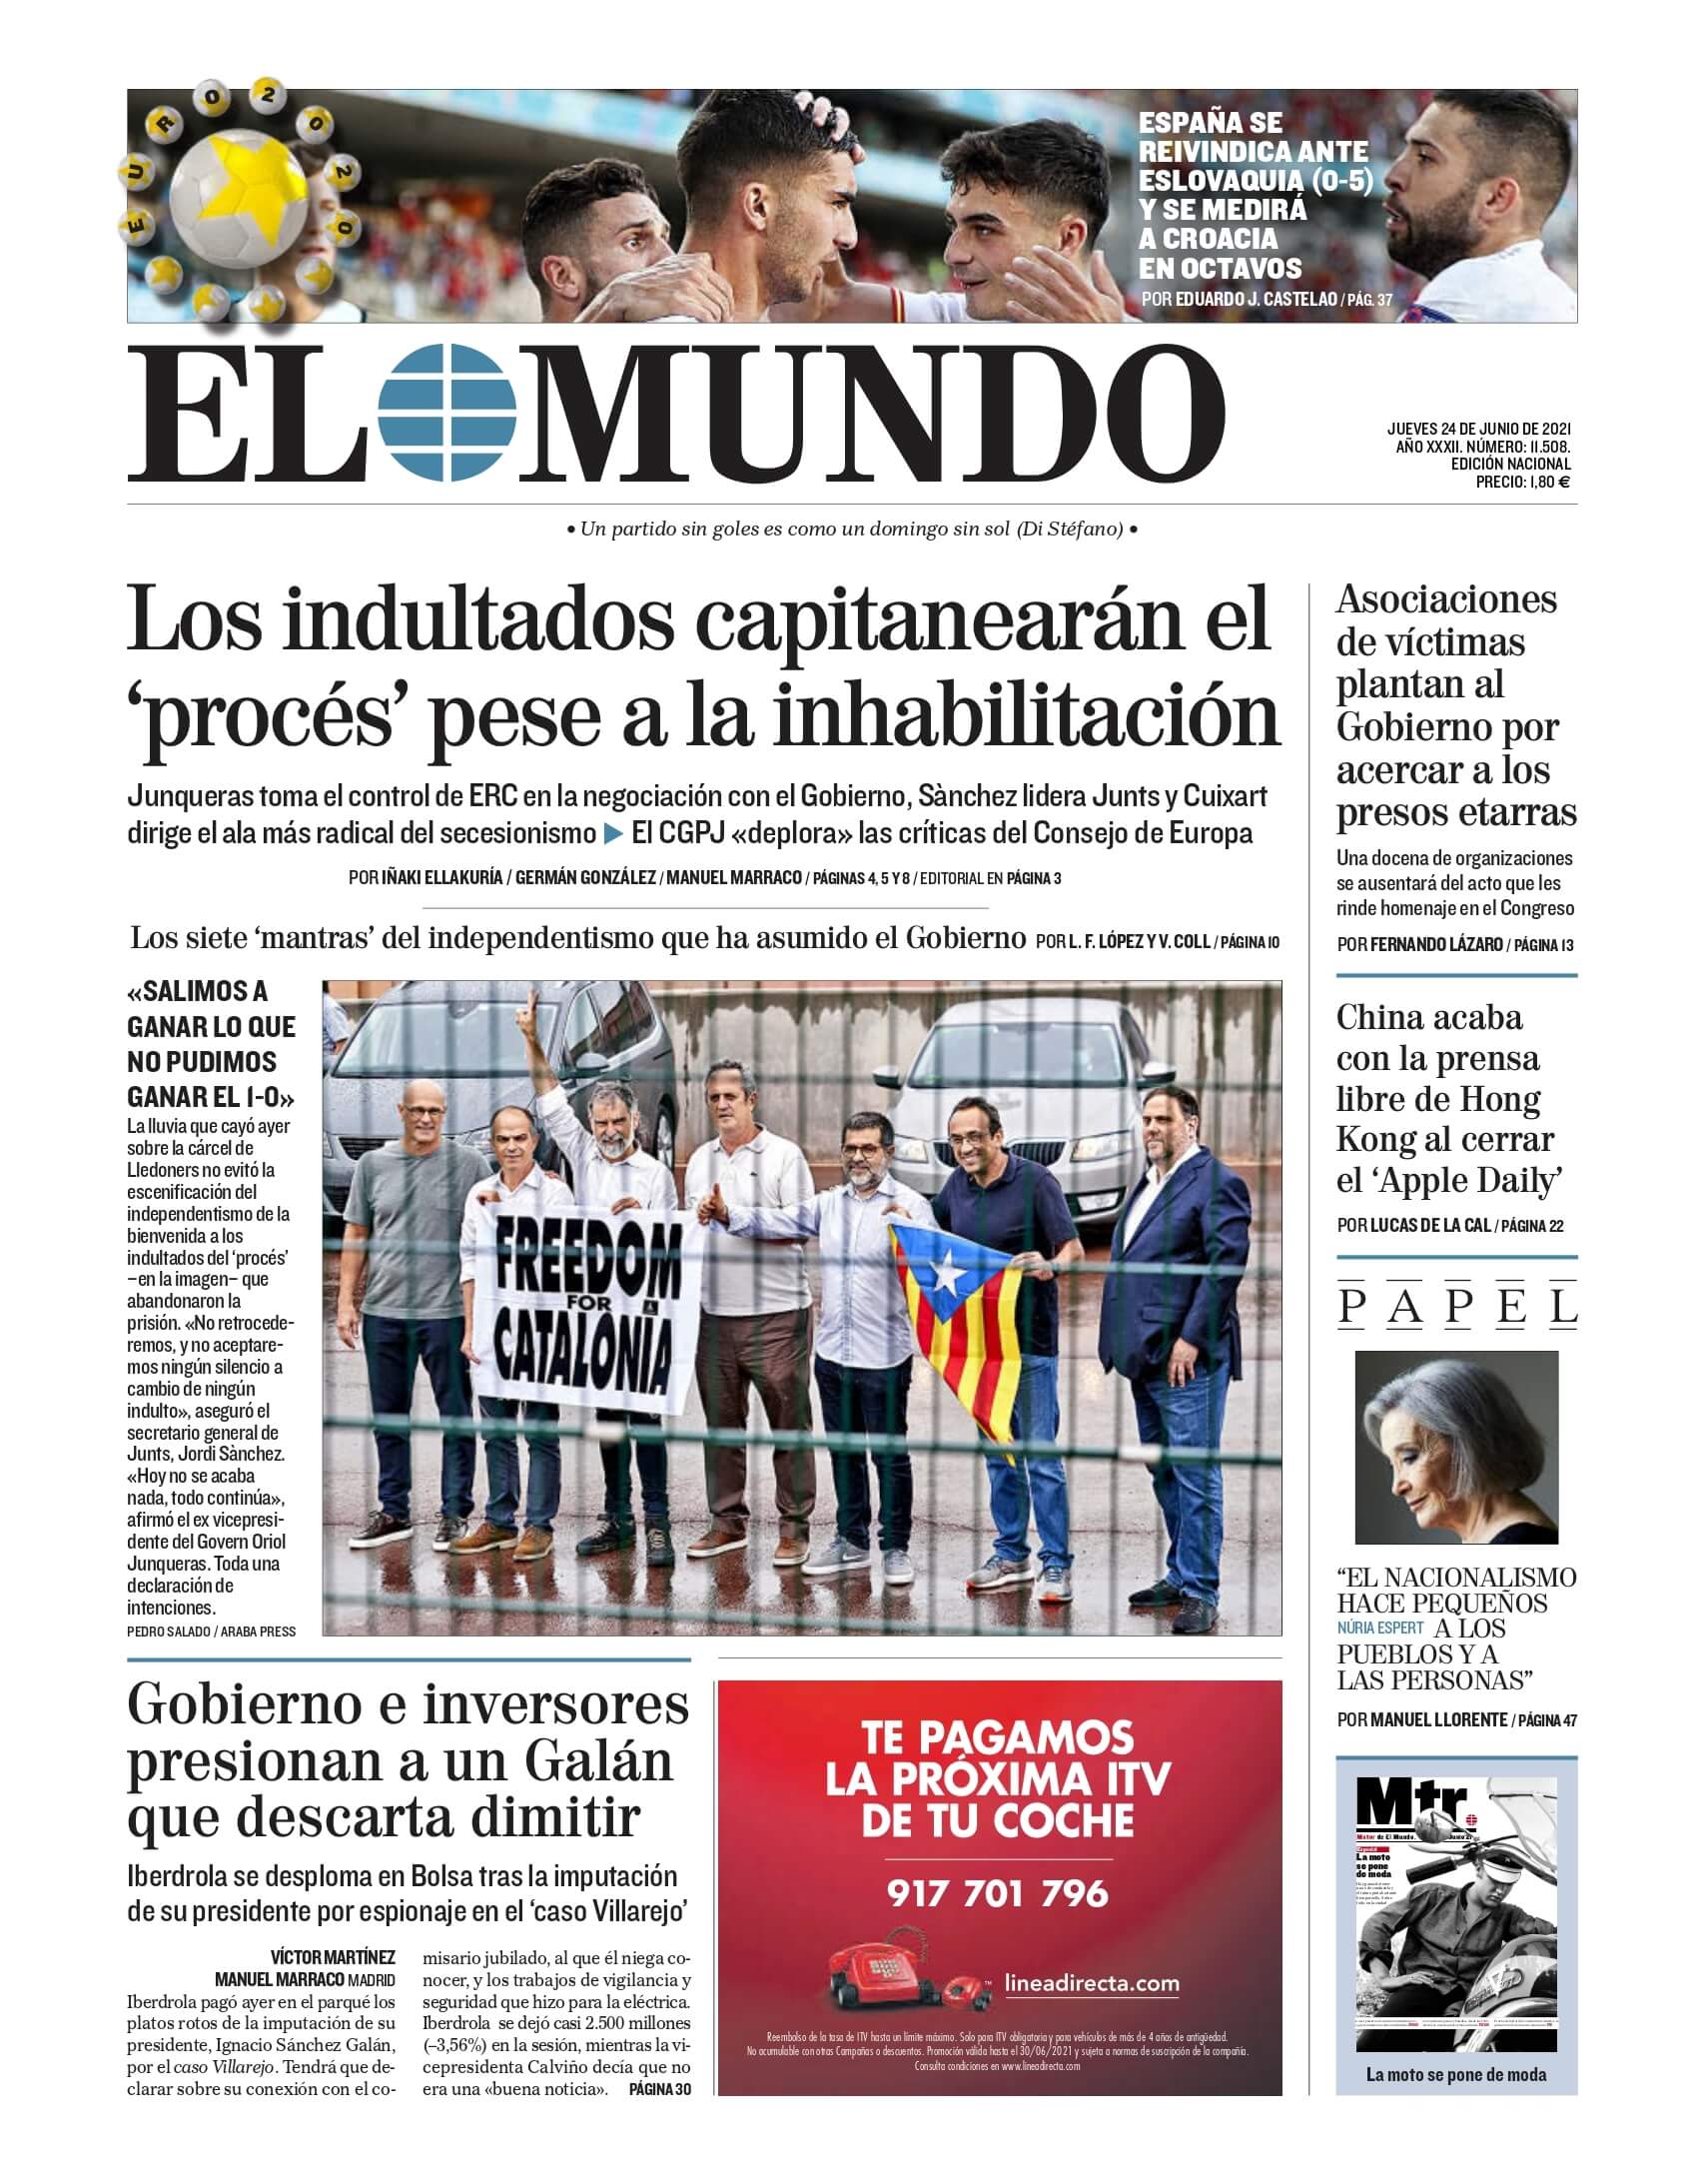 ¿Quién dirige el periódico de España?